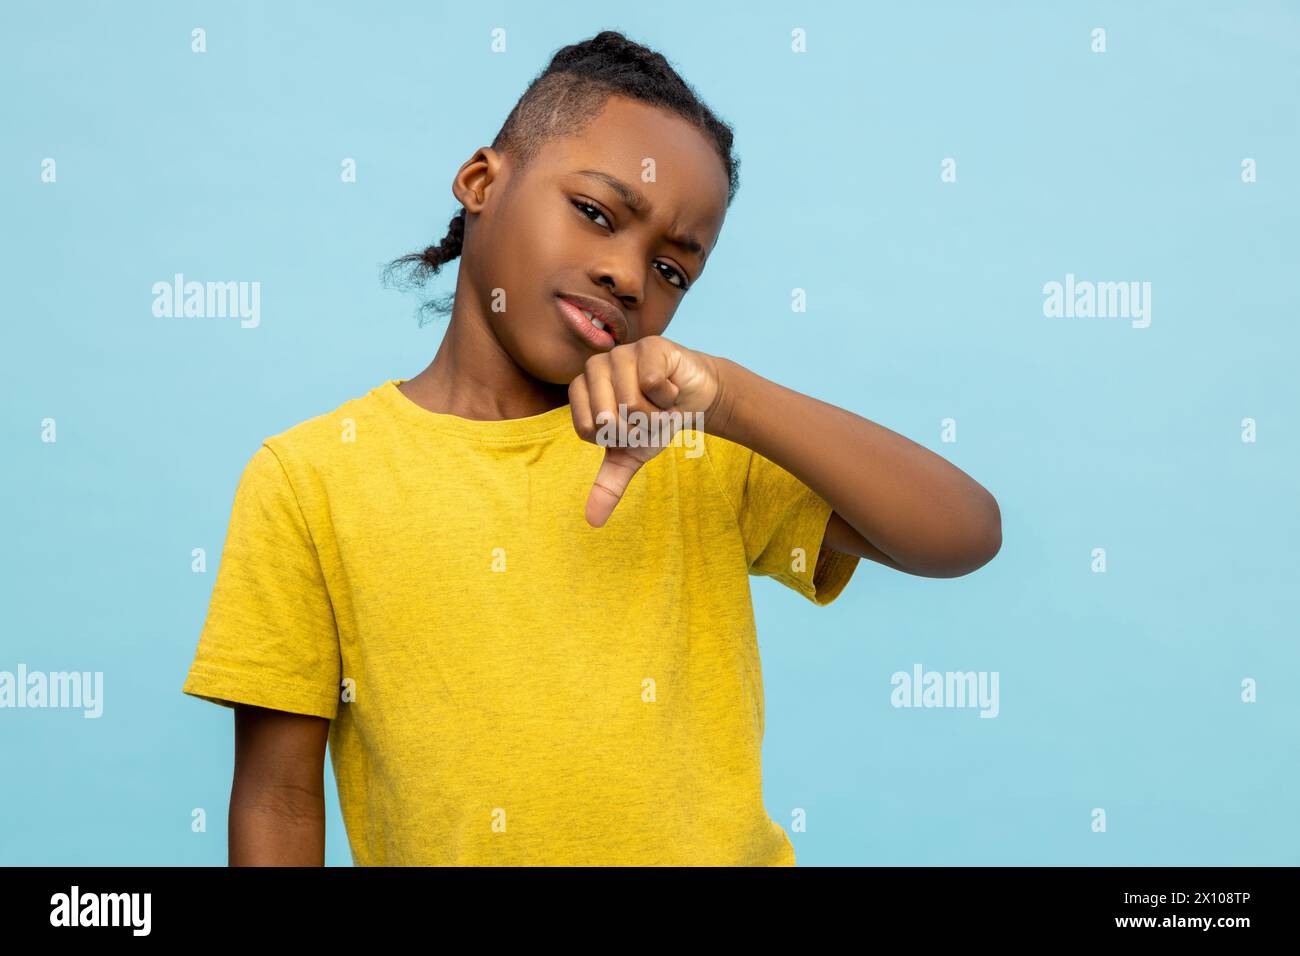 Enttäuschter afroamerikanischer kleiner Junge, der eine unliebsame Geste zeigt Stockfoto